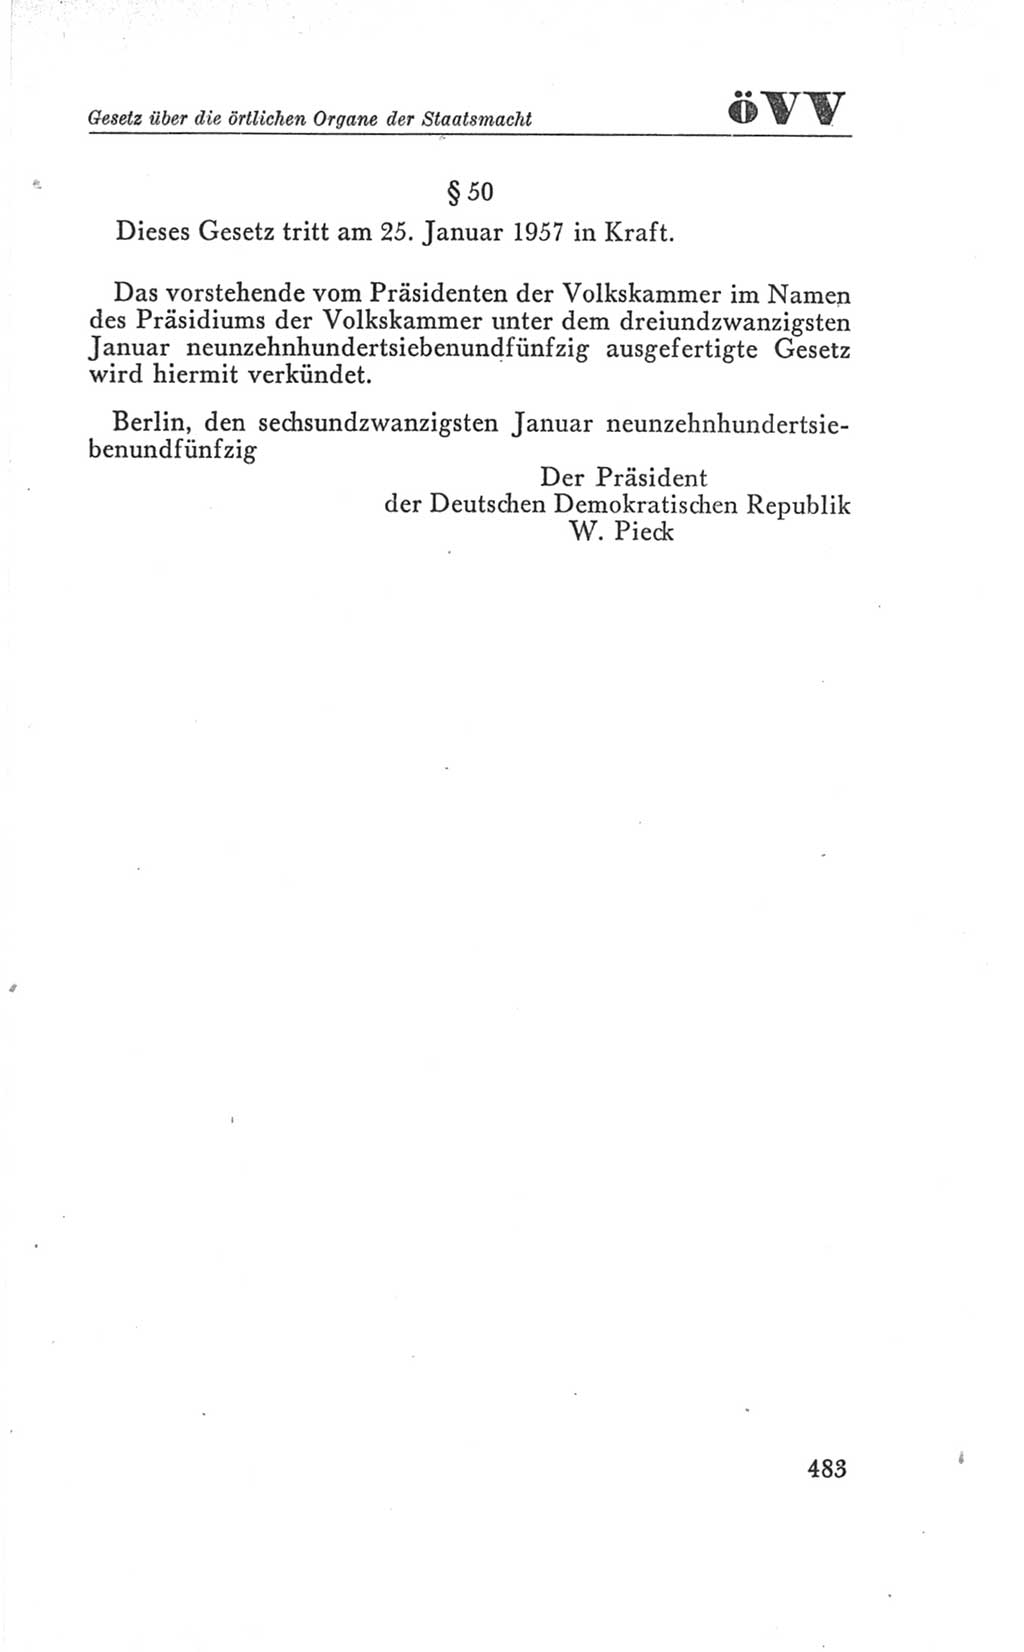 Handbuch der Volkskammer (VK) der Deutschen Demokratischen Republik (DDR), 3. Wahlperiode 1958-1963, Seite 483 (Hdb. VK. DDR 3. WP. 1958-1963, S. 483)